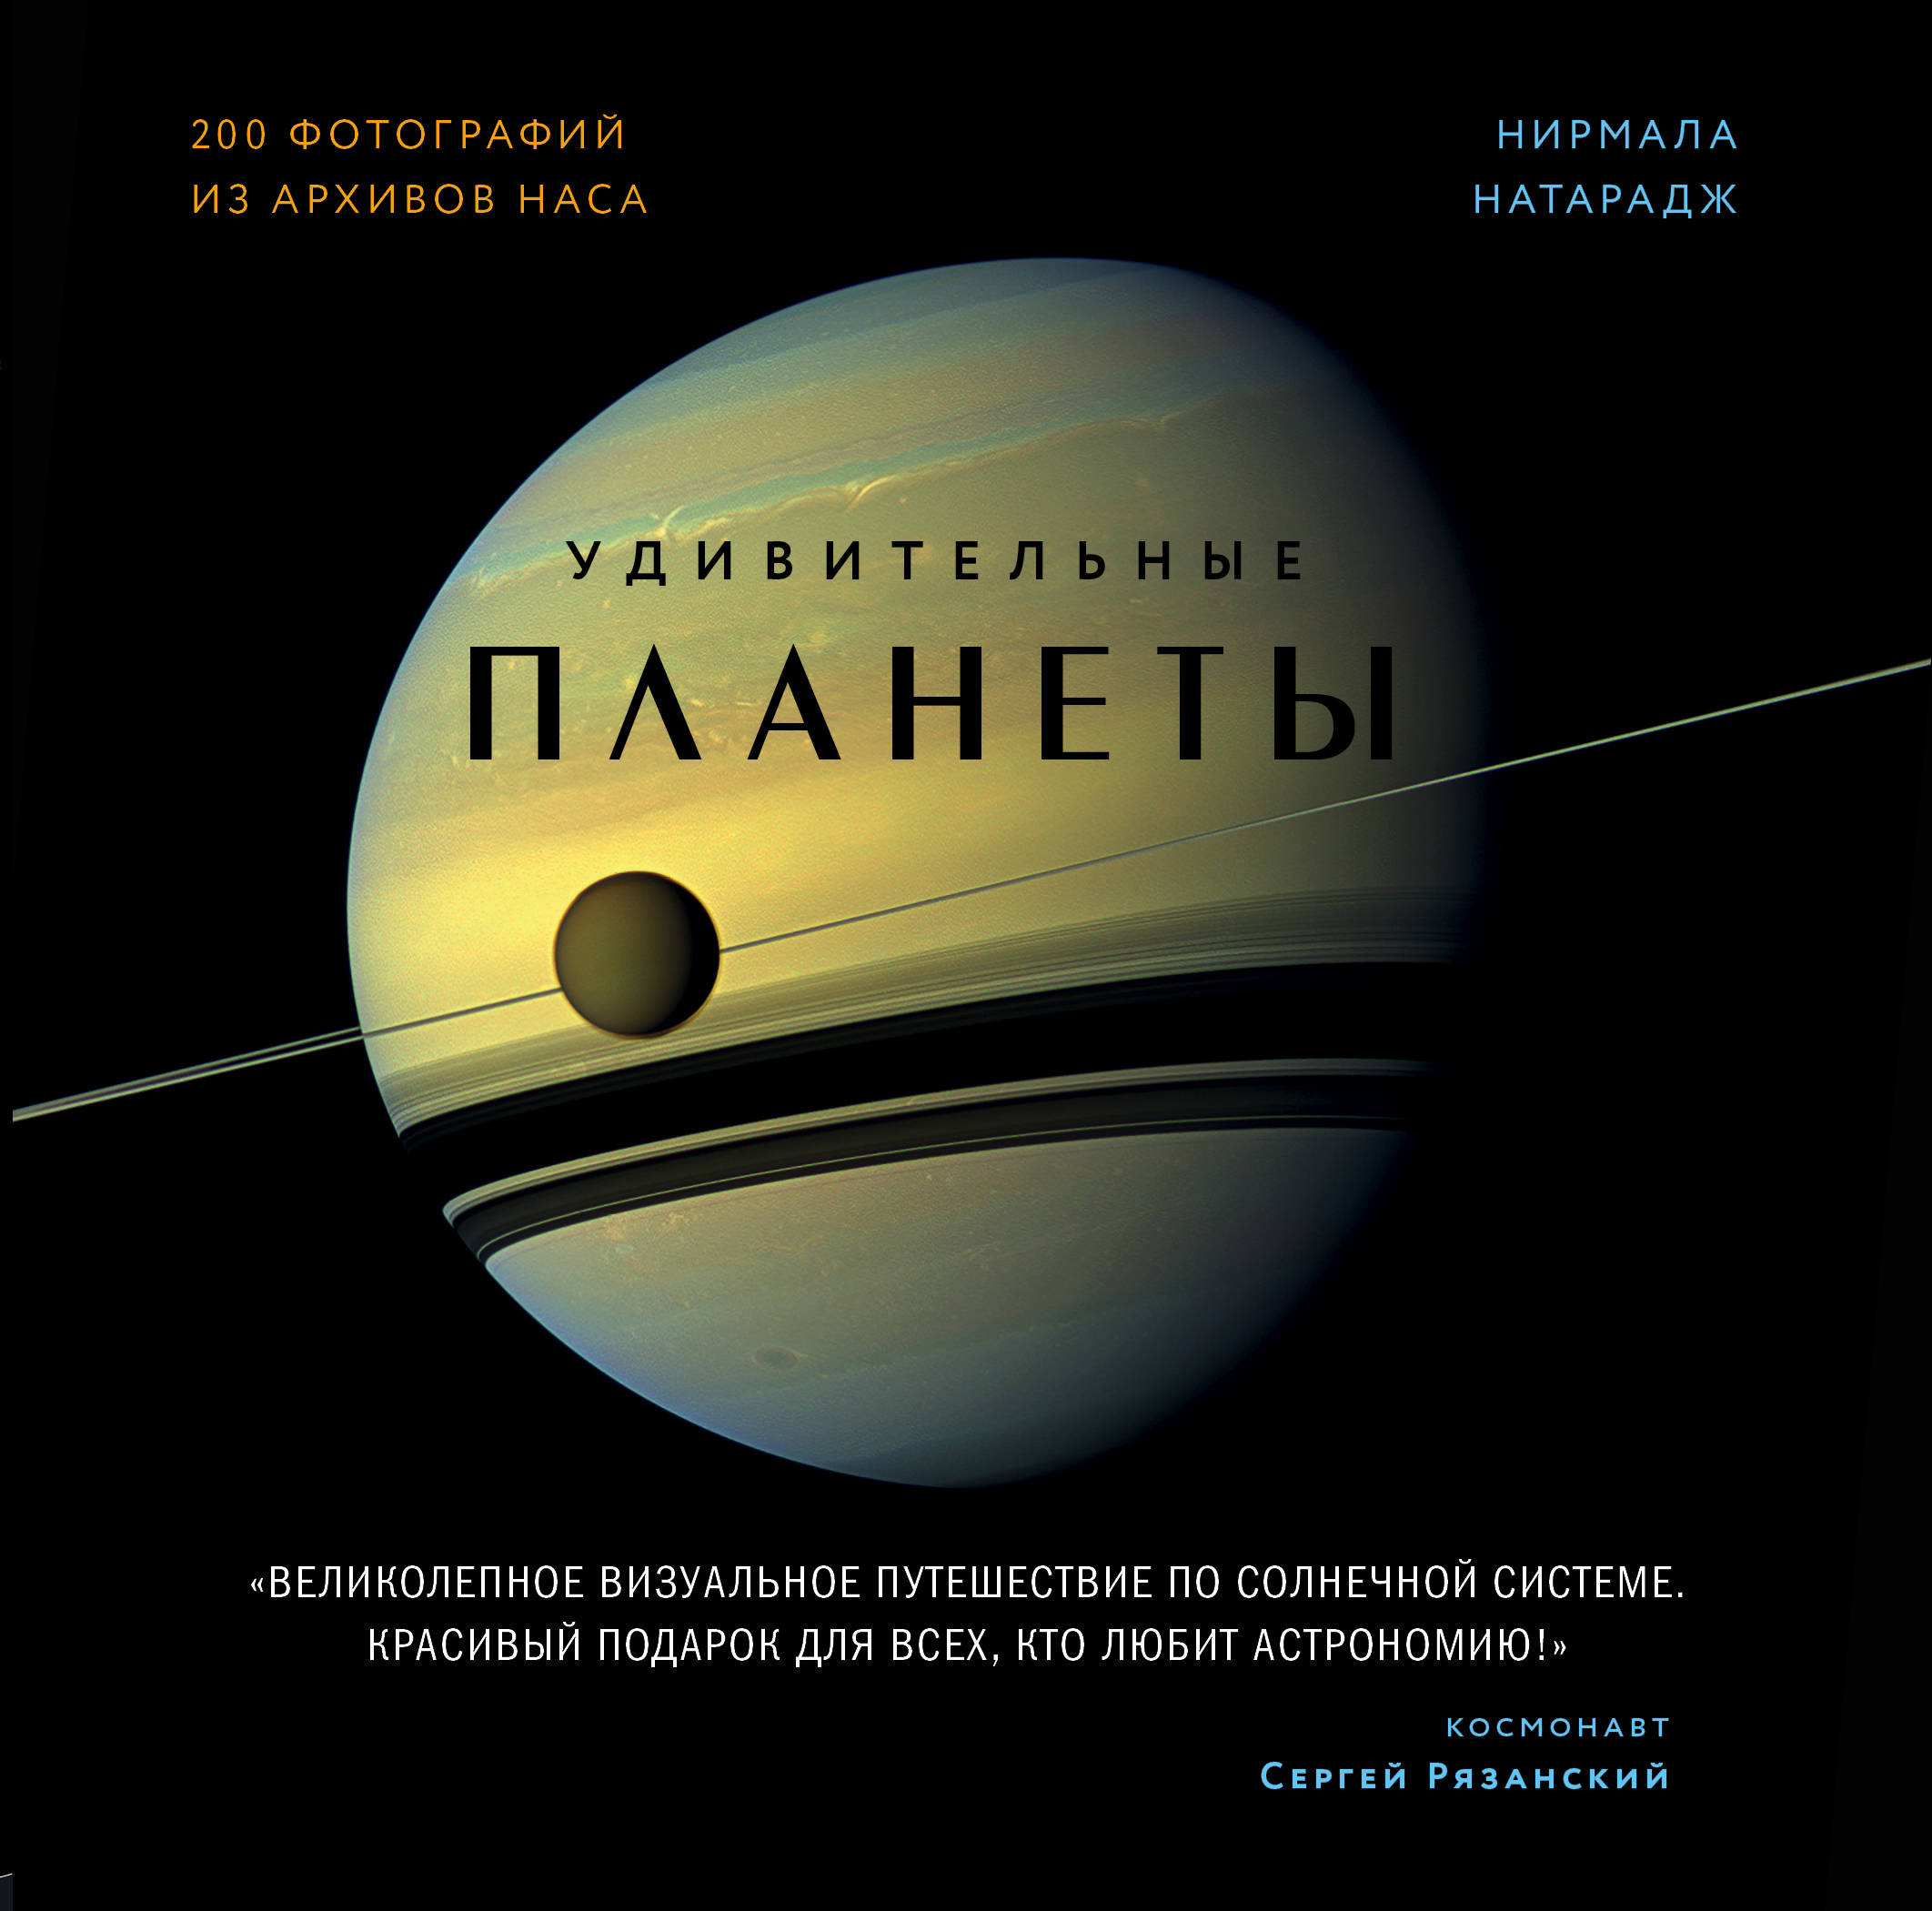 Натарадж Н Удивительные планеты. 2-е издание: исправленное и дополненное 